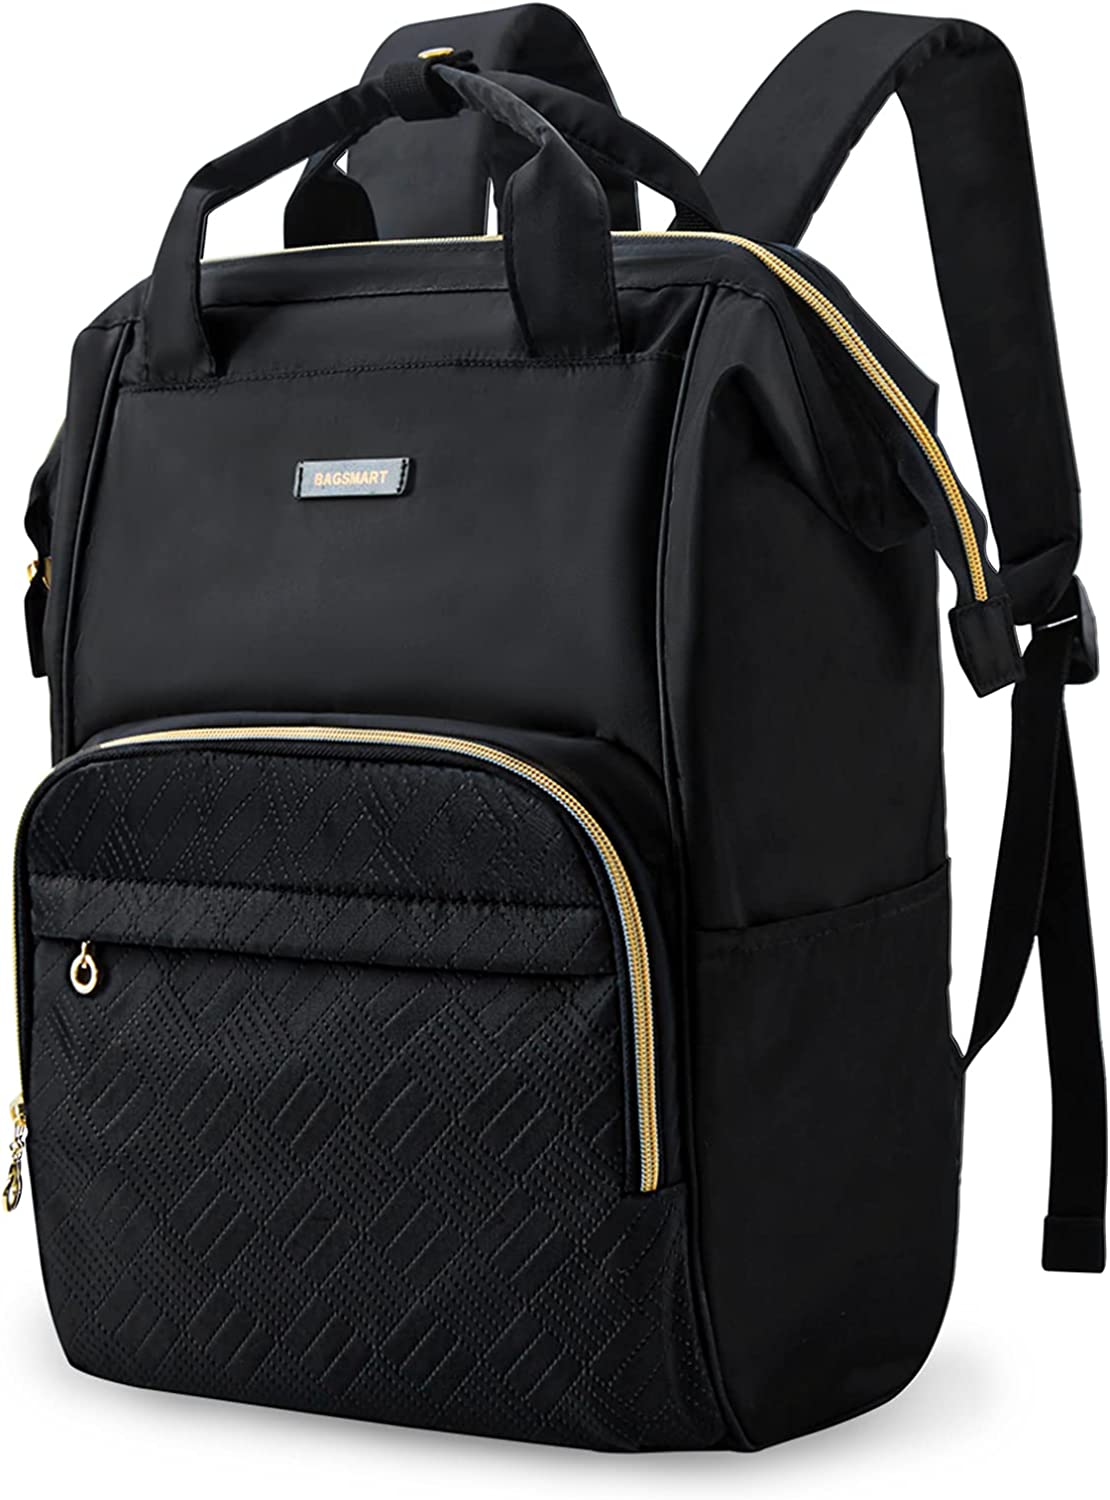 best-travel-laptop-bag-bagsmart